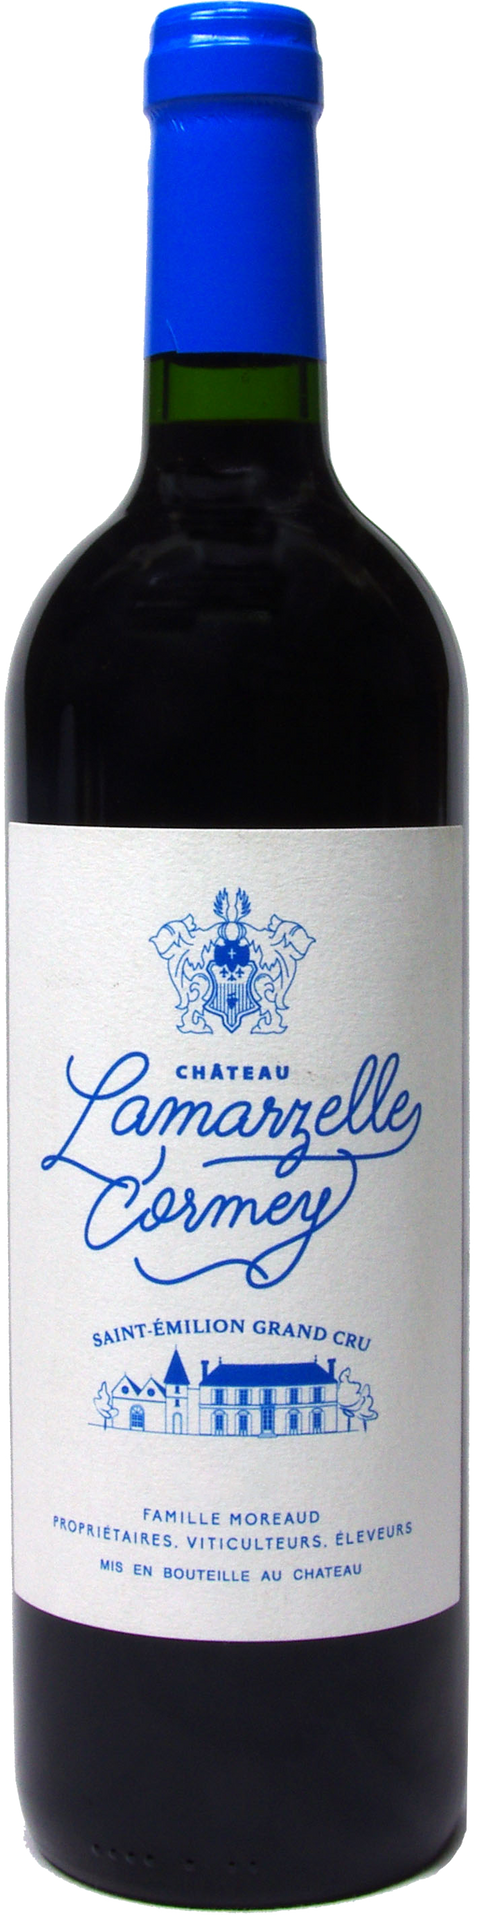 Chateau Lamarzelle Cormey---2016---Rouge---Château Lamarzelle Cormey---0.75